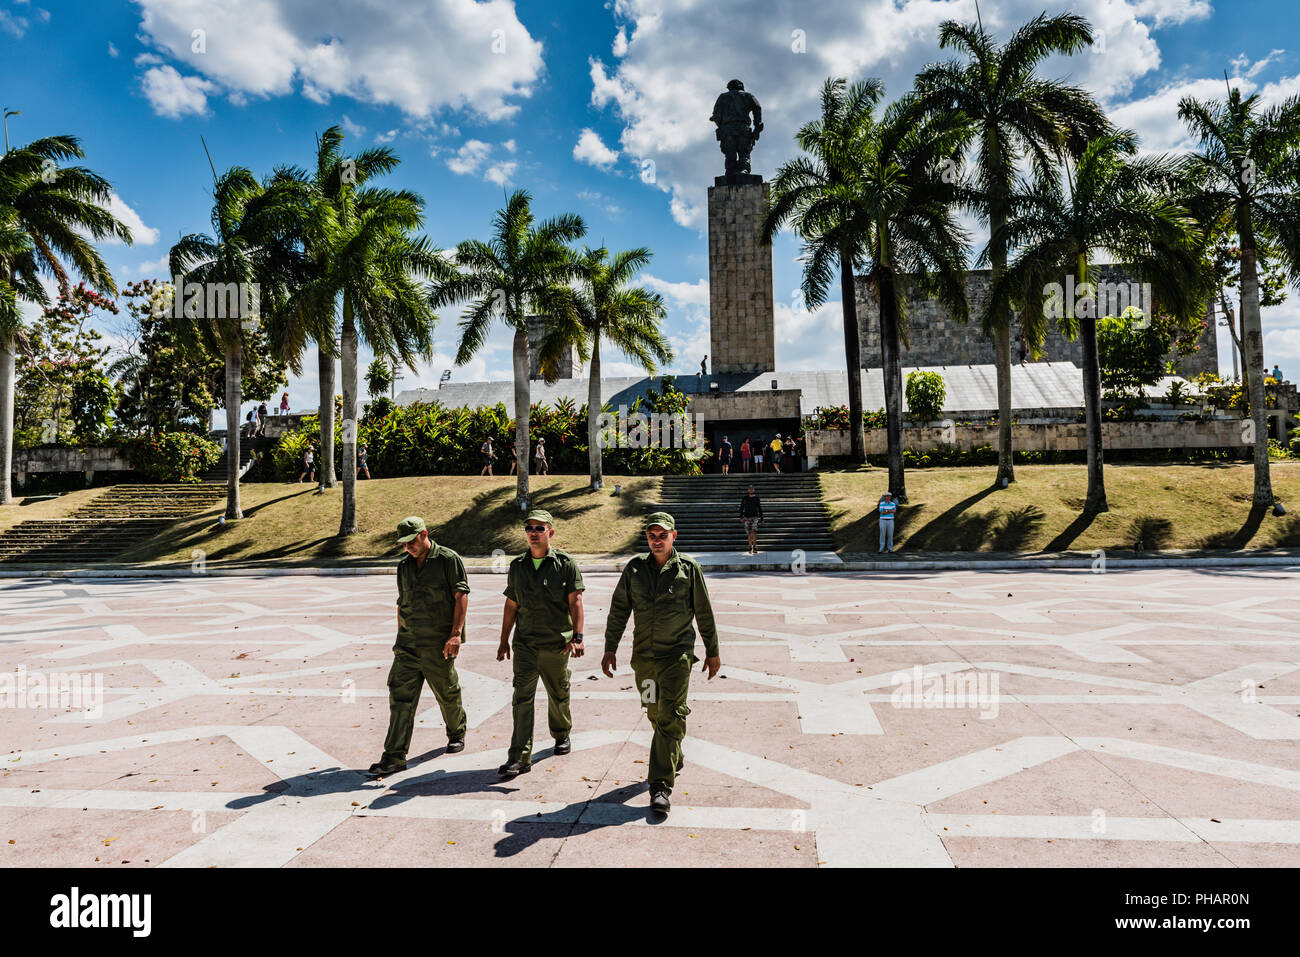 Santa Clara, Cuba / Marzo 16, 2016: tre soldati cubani in verde fatiche attraversando plaza al Che Guevara mausoleo. Foto Stock